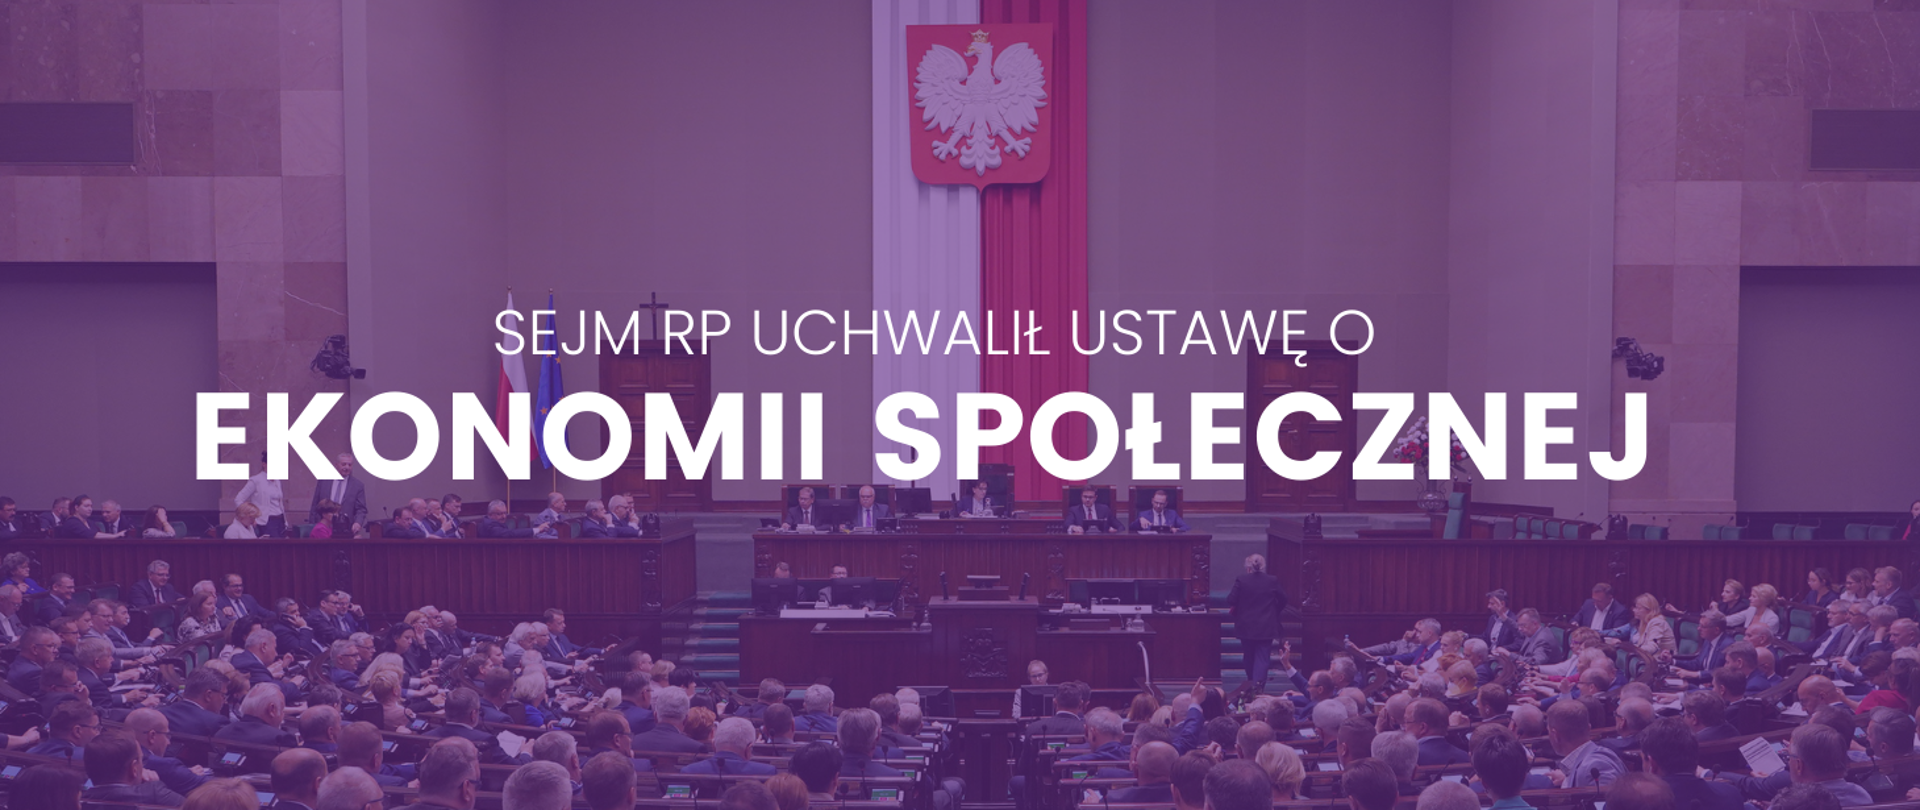 Sejm RP uchwalił ustawę o ekonomii społecznej